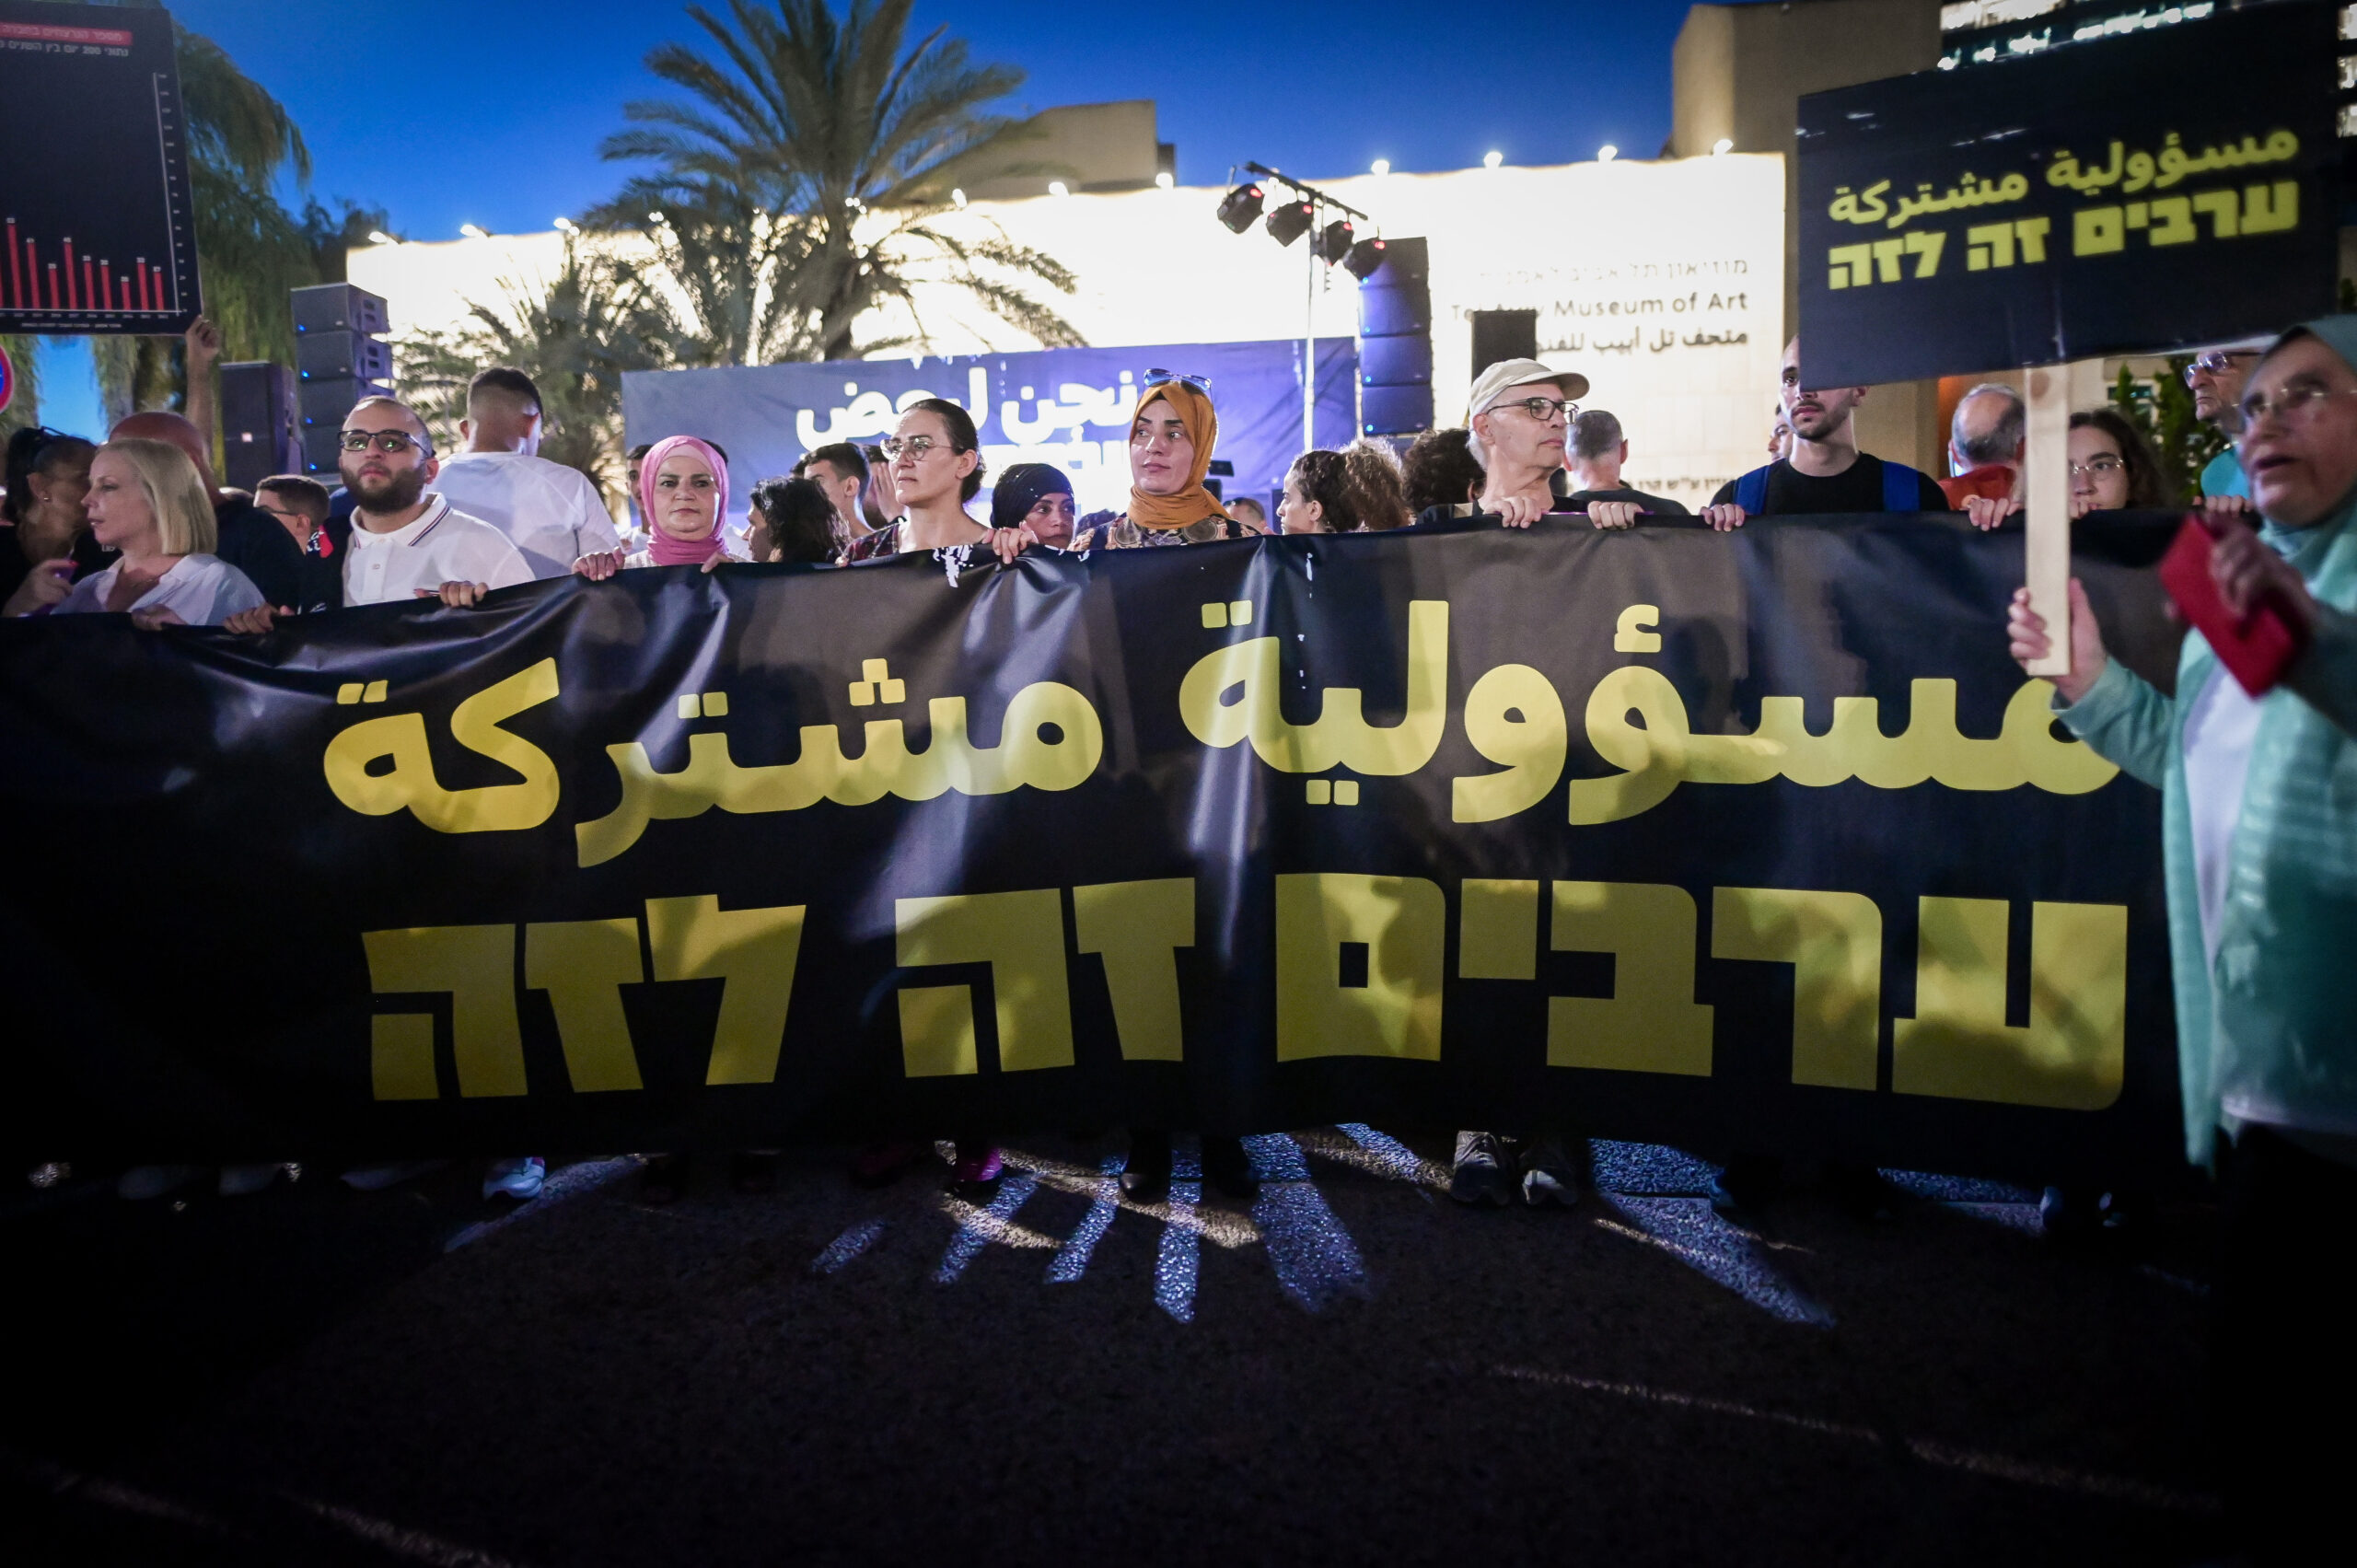 אם הרפורמה תעבור, הפלסטינים יהיו הראשונים לסבול. מחאה בתל אביב נגד הרצח בחברה הערבית, אוגוסט 2023 (צילום: אבשלום ששוני / פלאש 90)